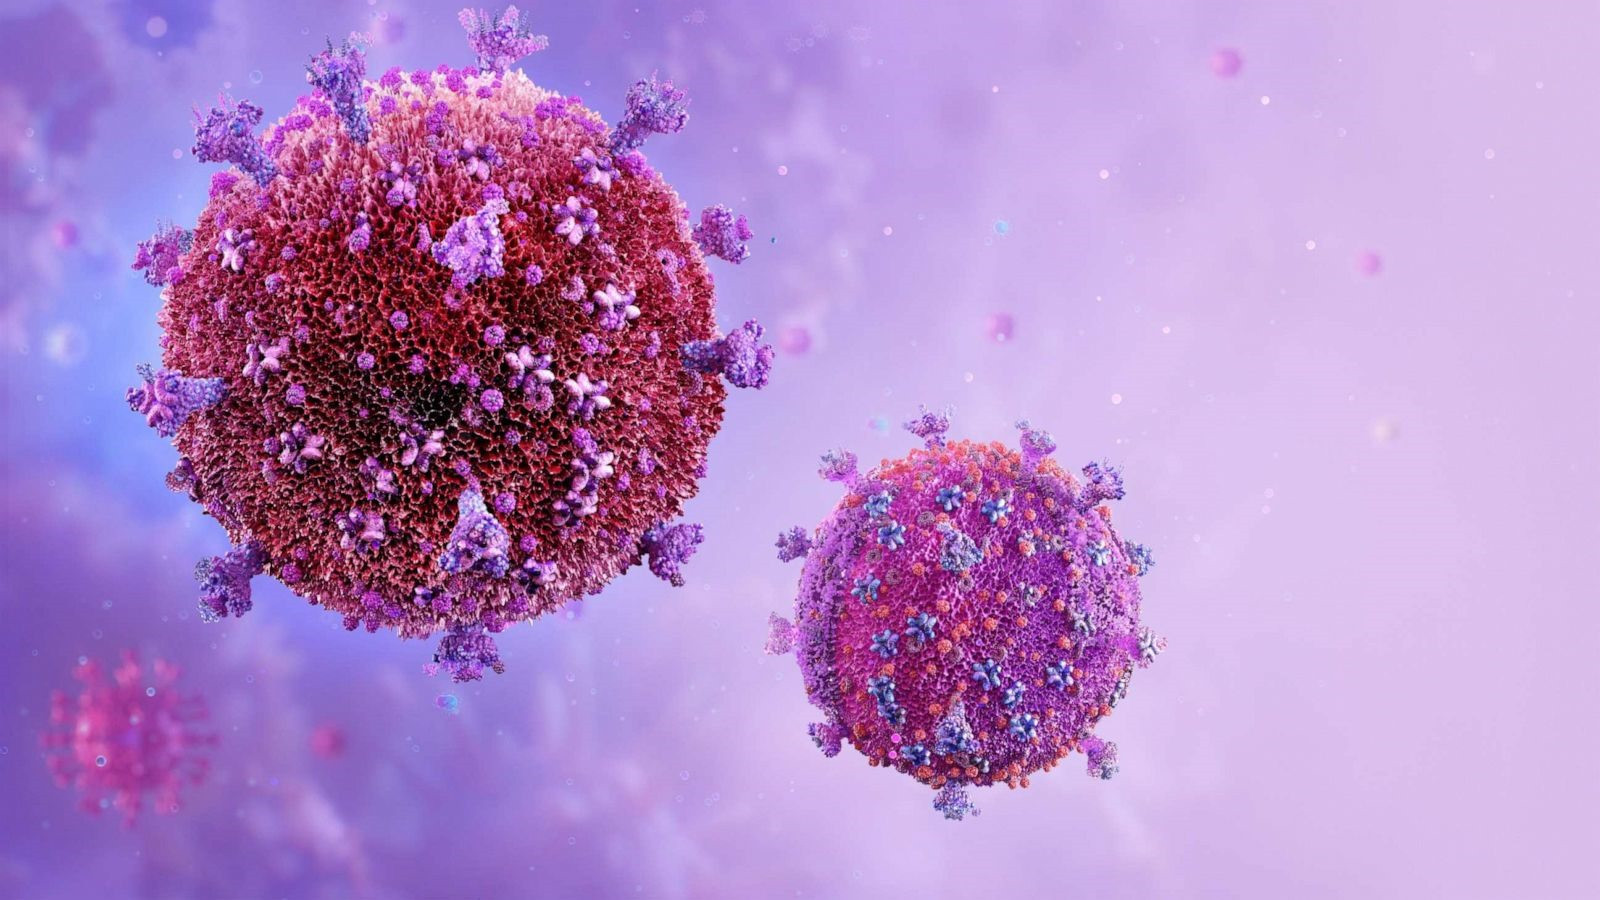 Thế giới hiện chưa có thuốc đặc trị HIV cũng như vắc xin phòng ngừa căn bệnh này. Ảnh: Shutterstock